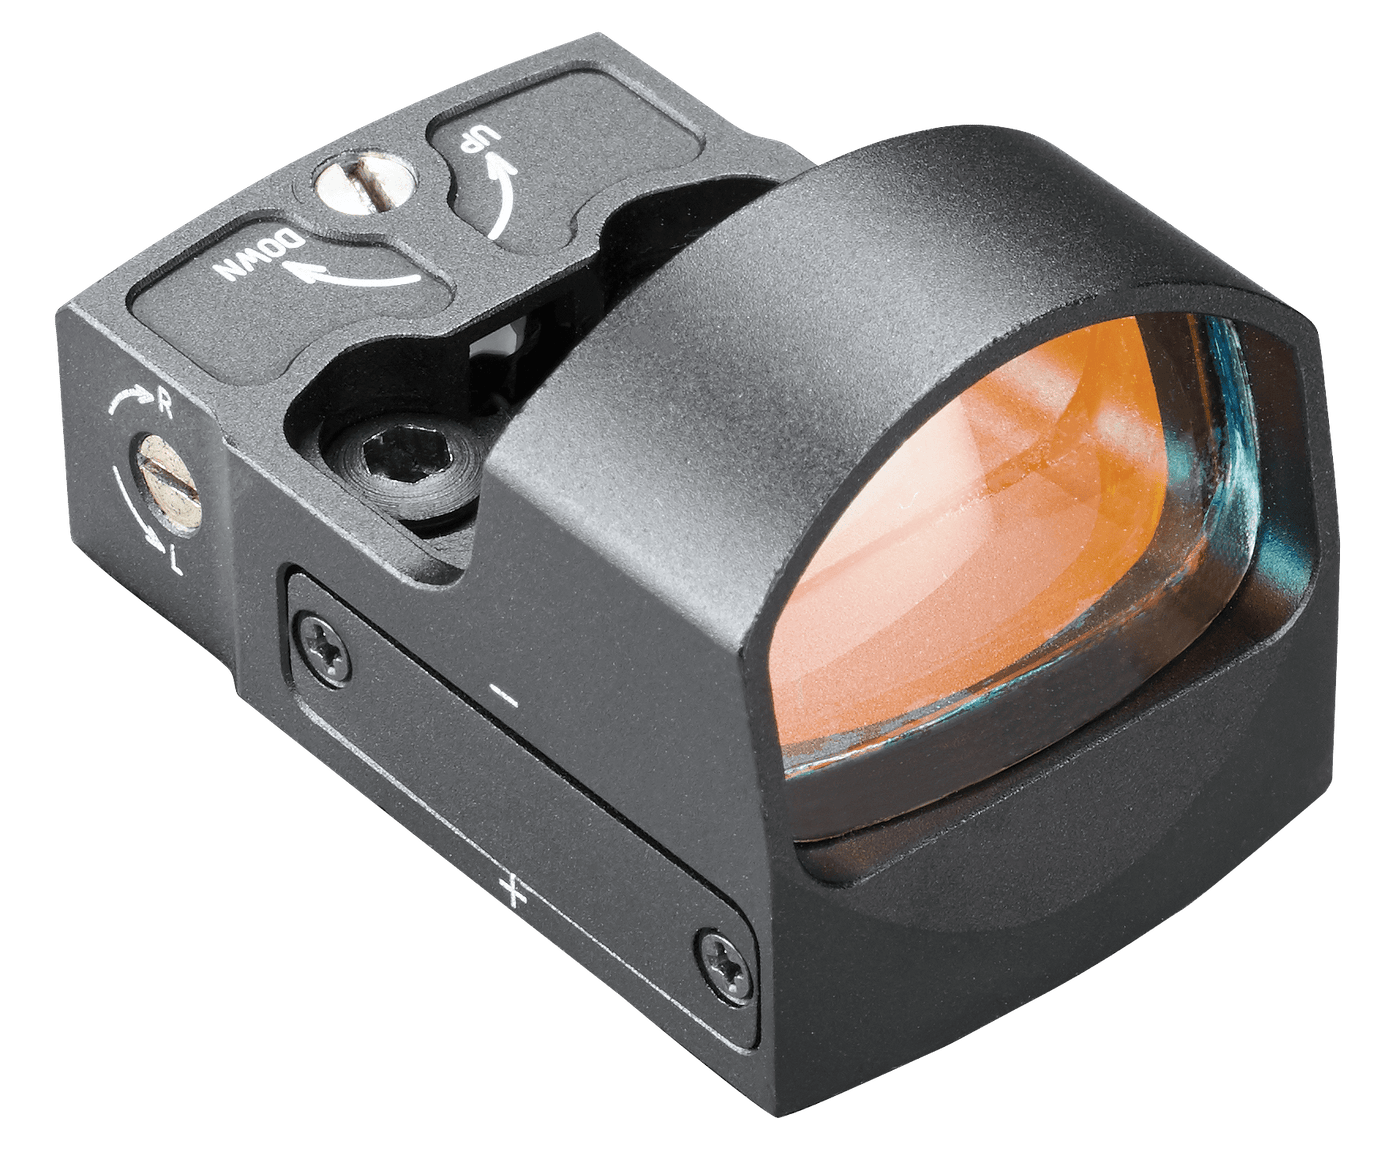 Tasco Tasco Propoint Reflex Sight Black 1x25 4moa Red Dot Optics